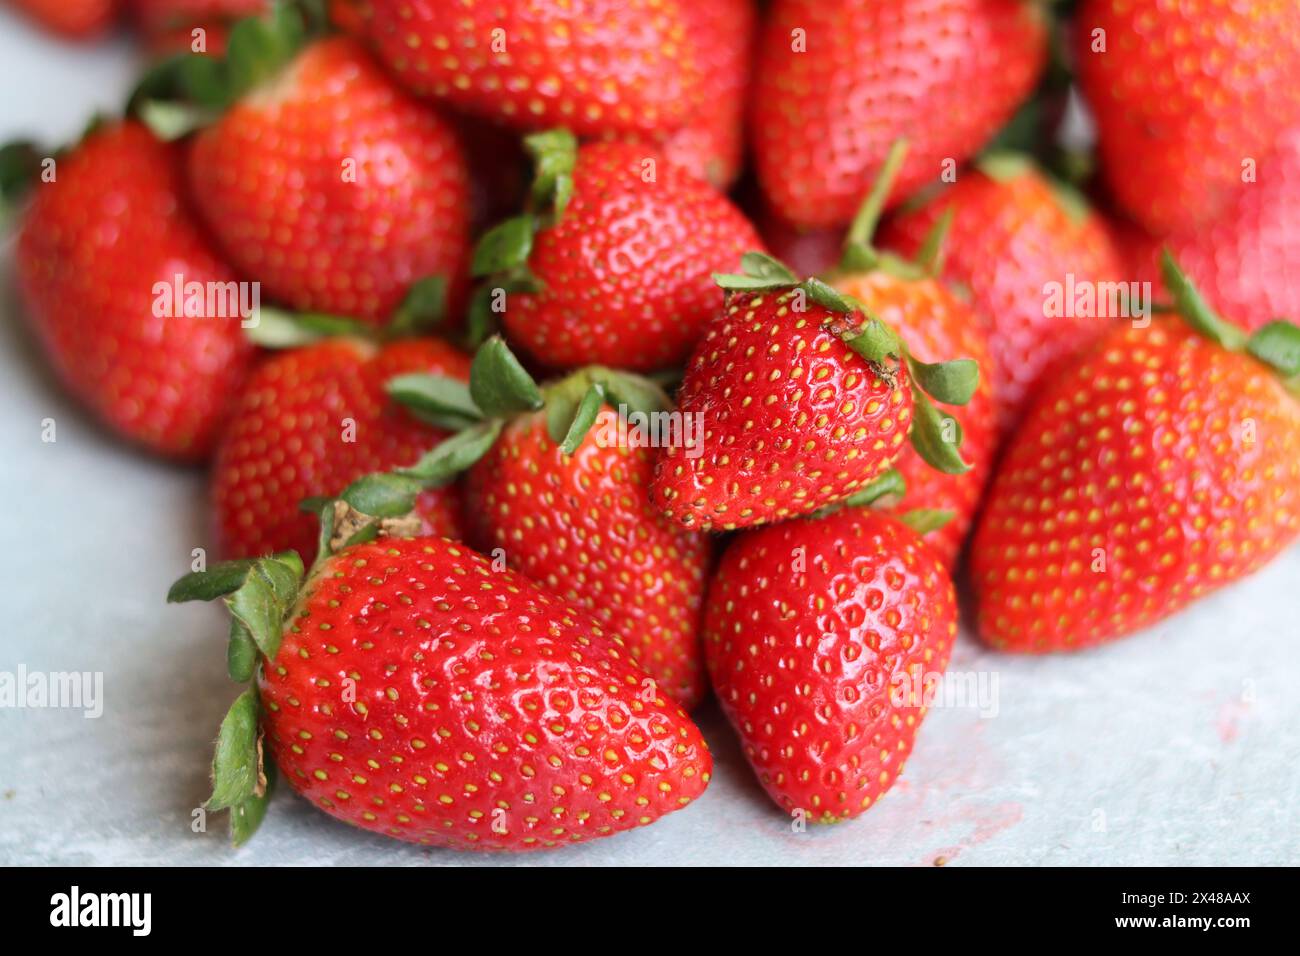 Fond rouge de fraises mûres. Texture fraise gros plan photo. Baies biologiques fraîches macro. Manger un concept frais. Banque D'Images